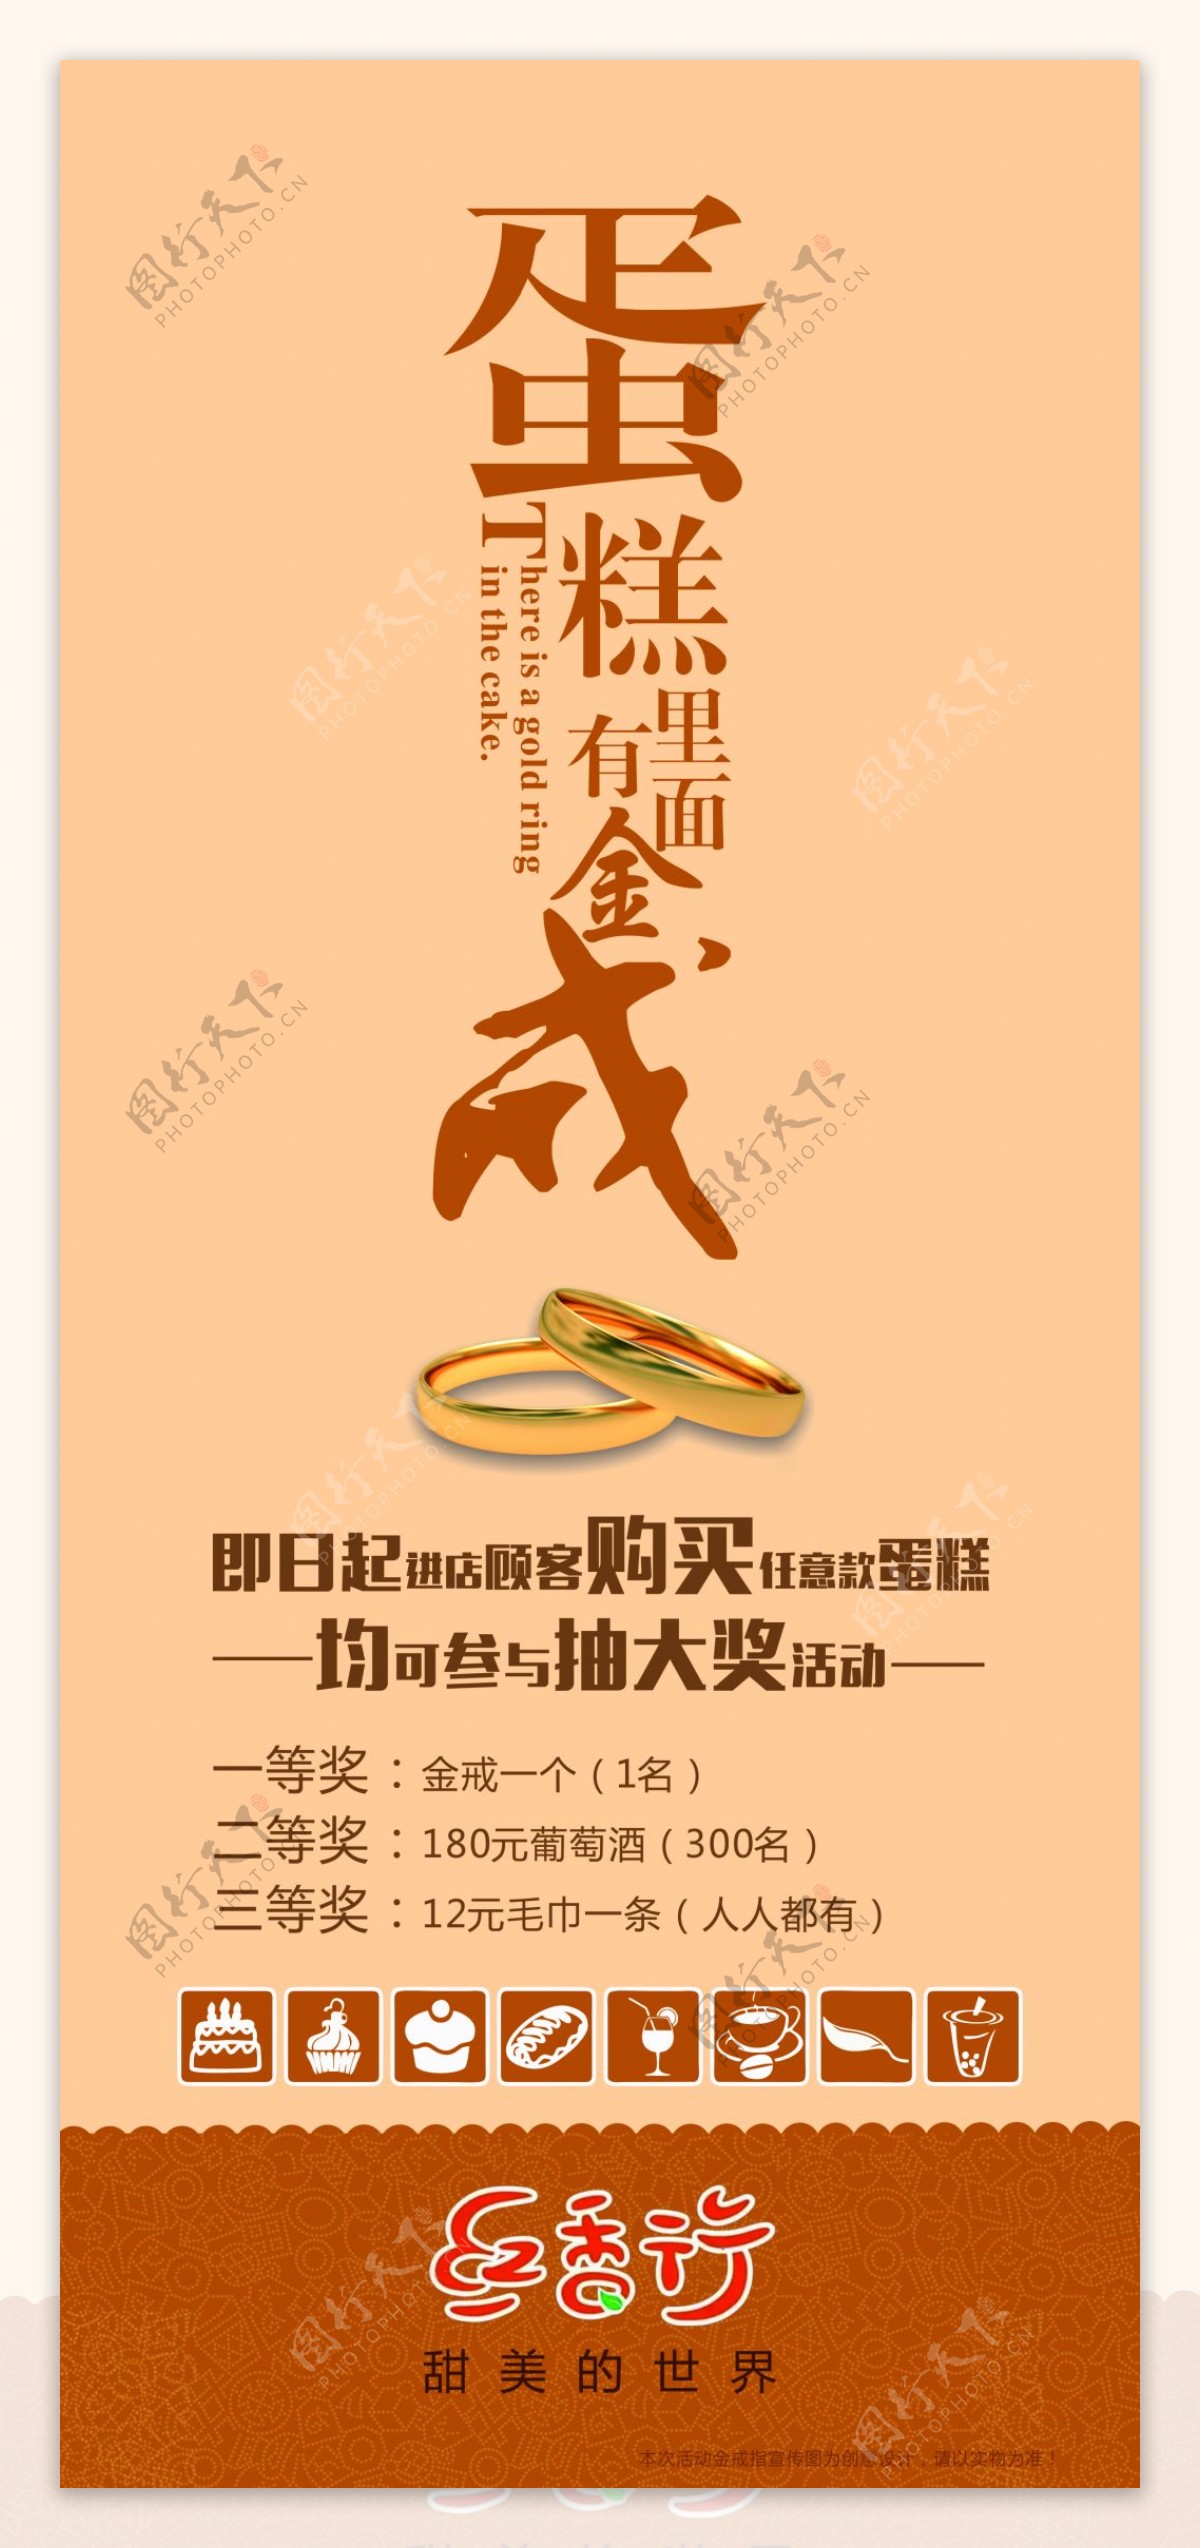 华语雅图原创设计红香行蛋糕送金戒展架